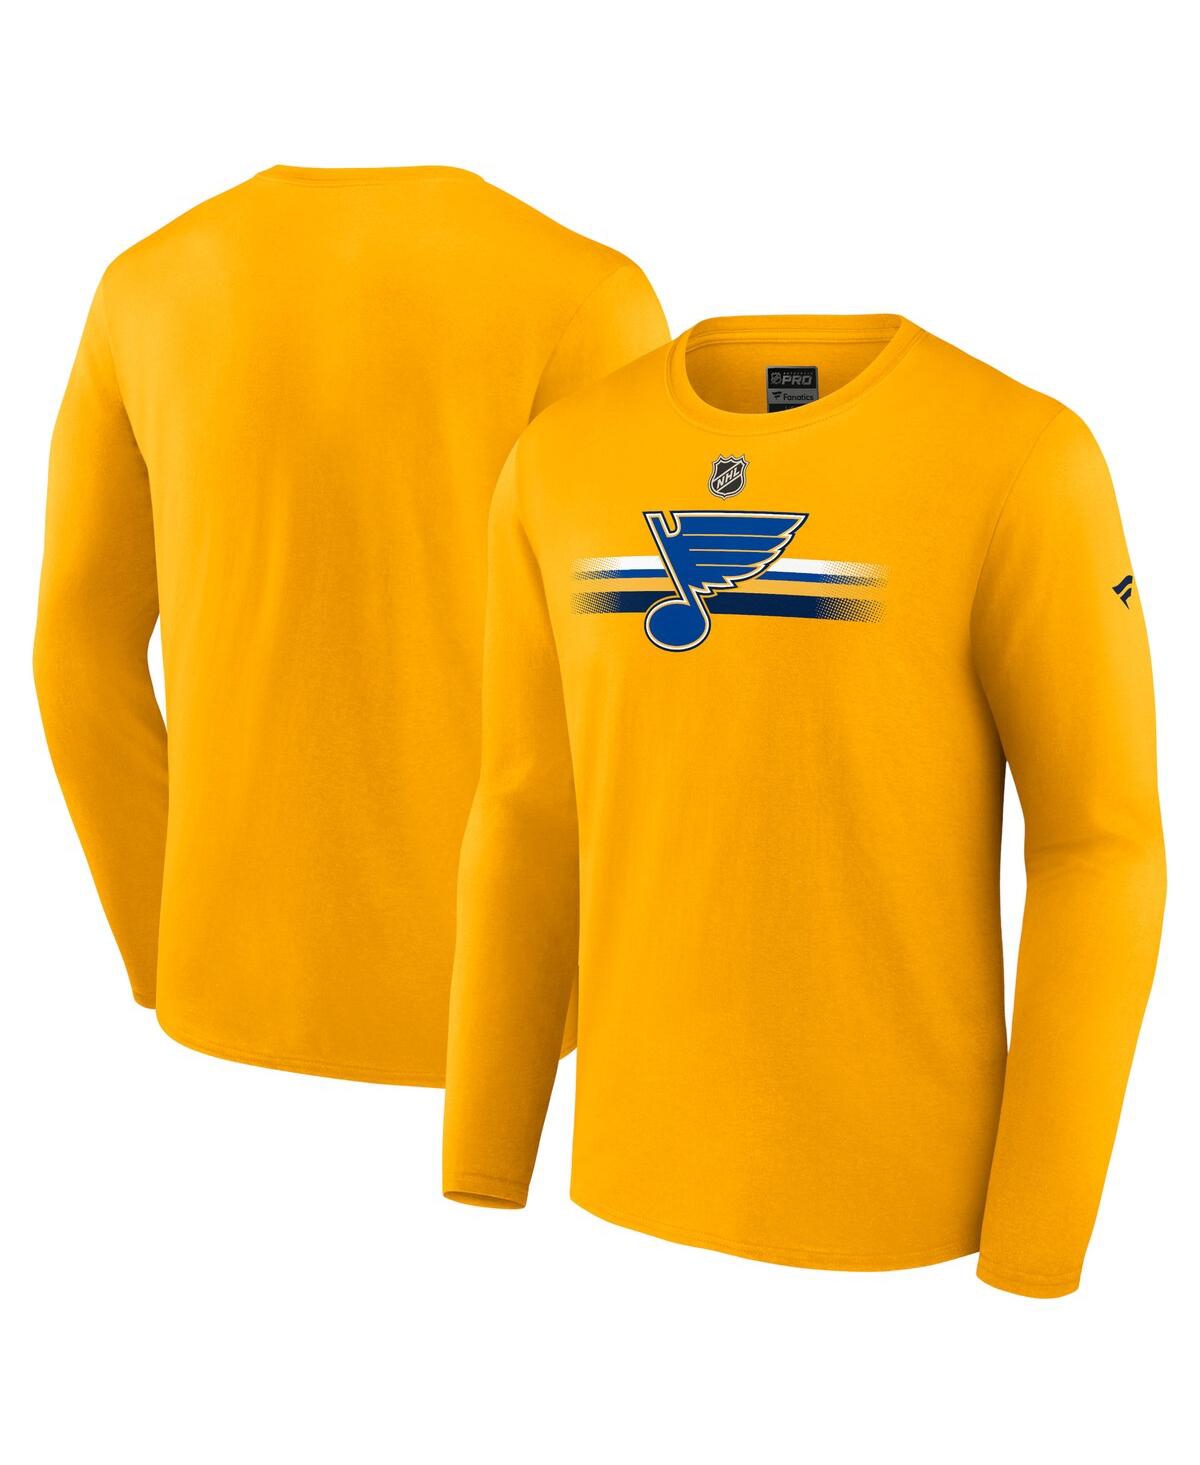 Shop Fanatics Men's  Gold St. Louis Blues Authentic Pro Secondary Replen Long Sleeve T-shirt